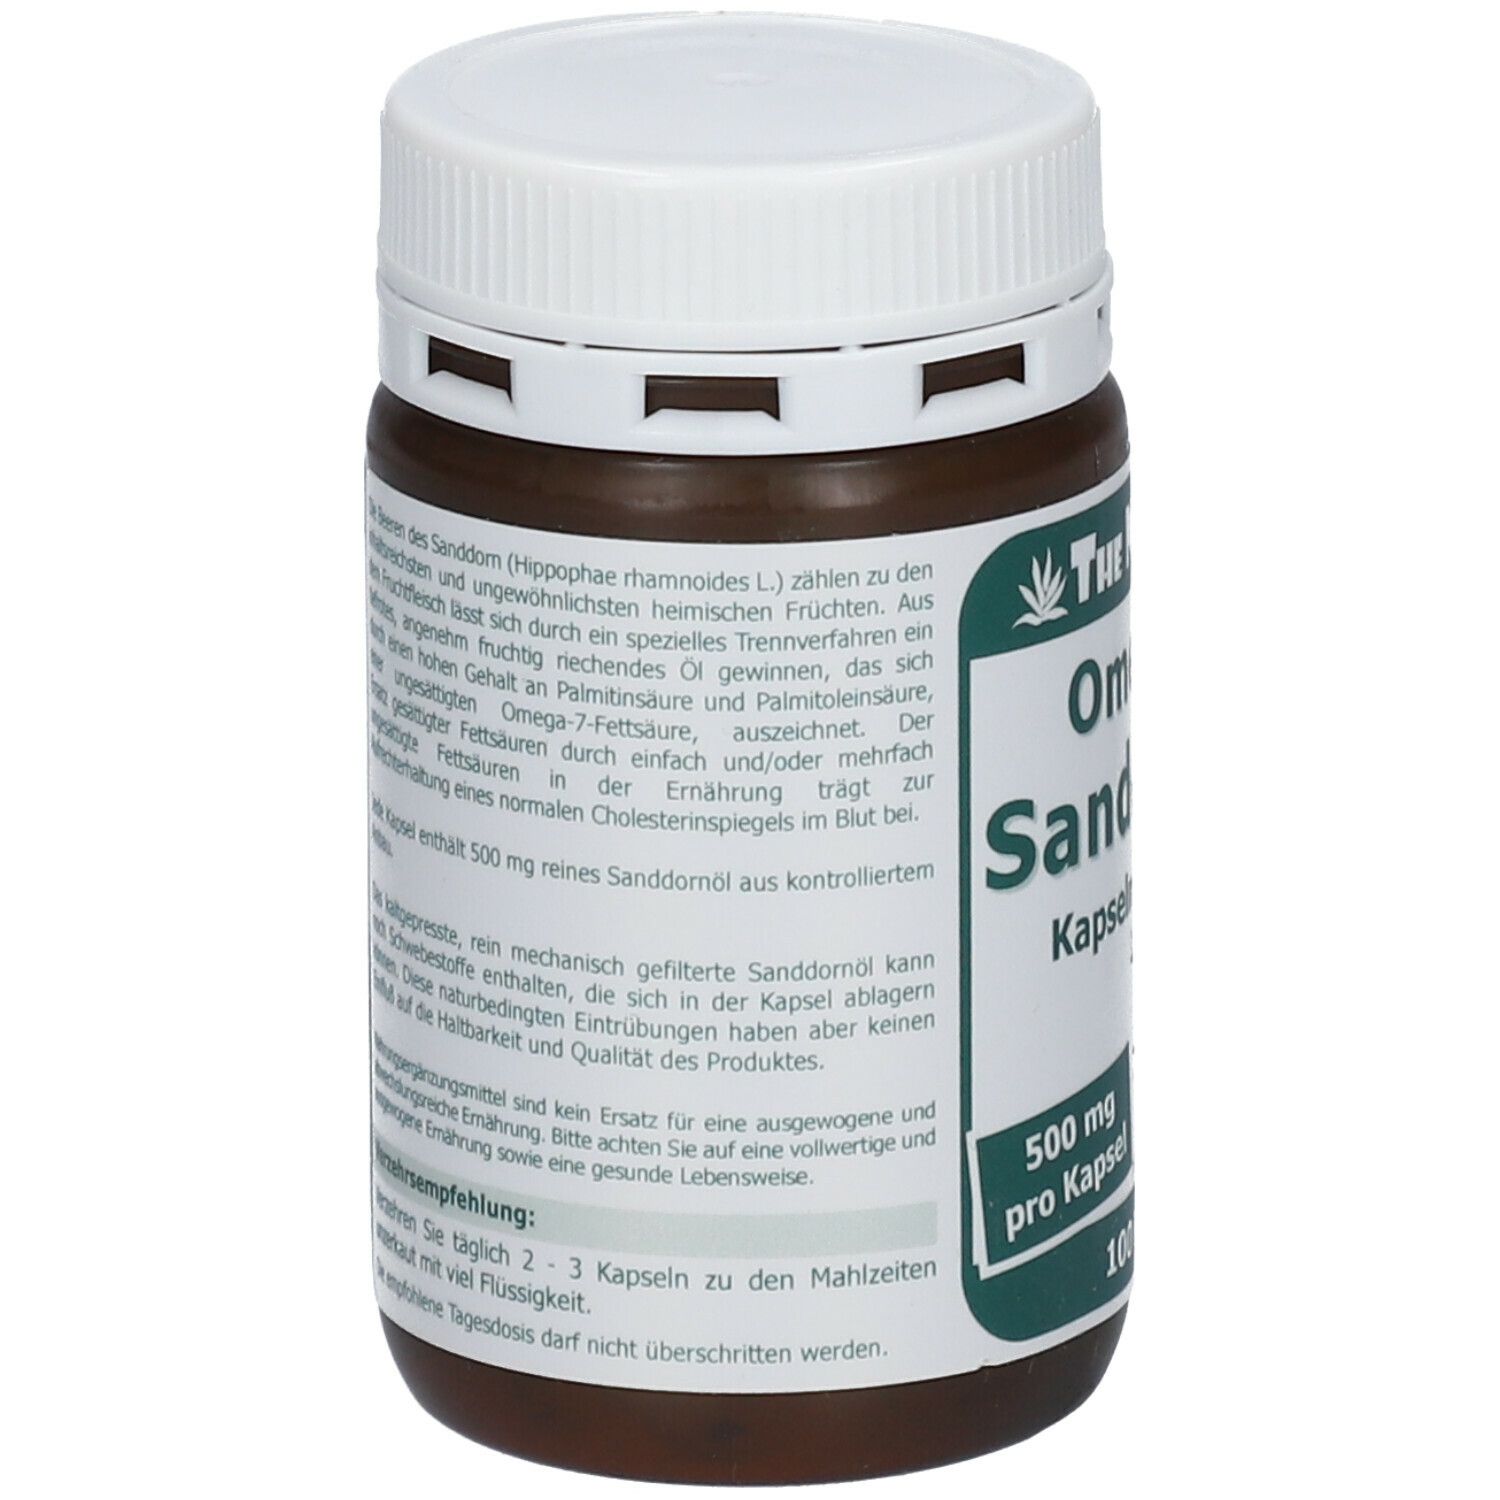 Omega -7 Sanddornöl 500 mg